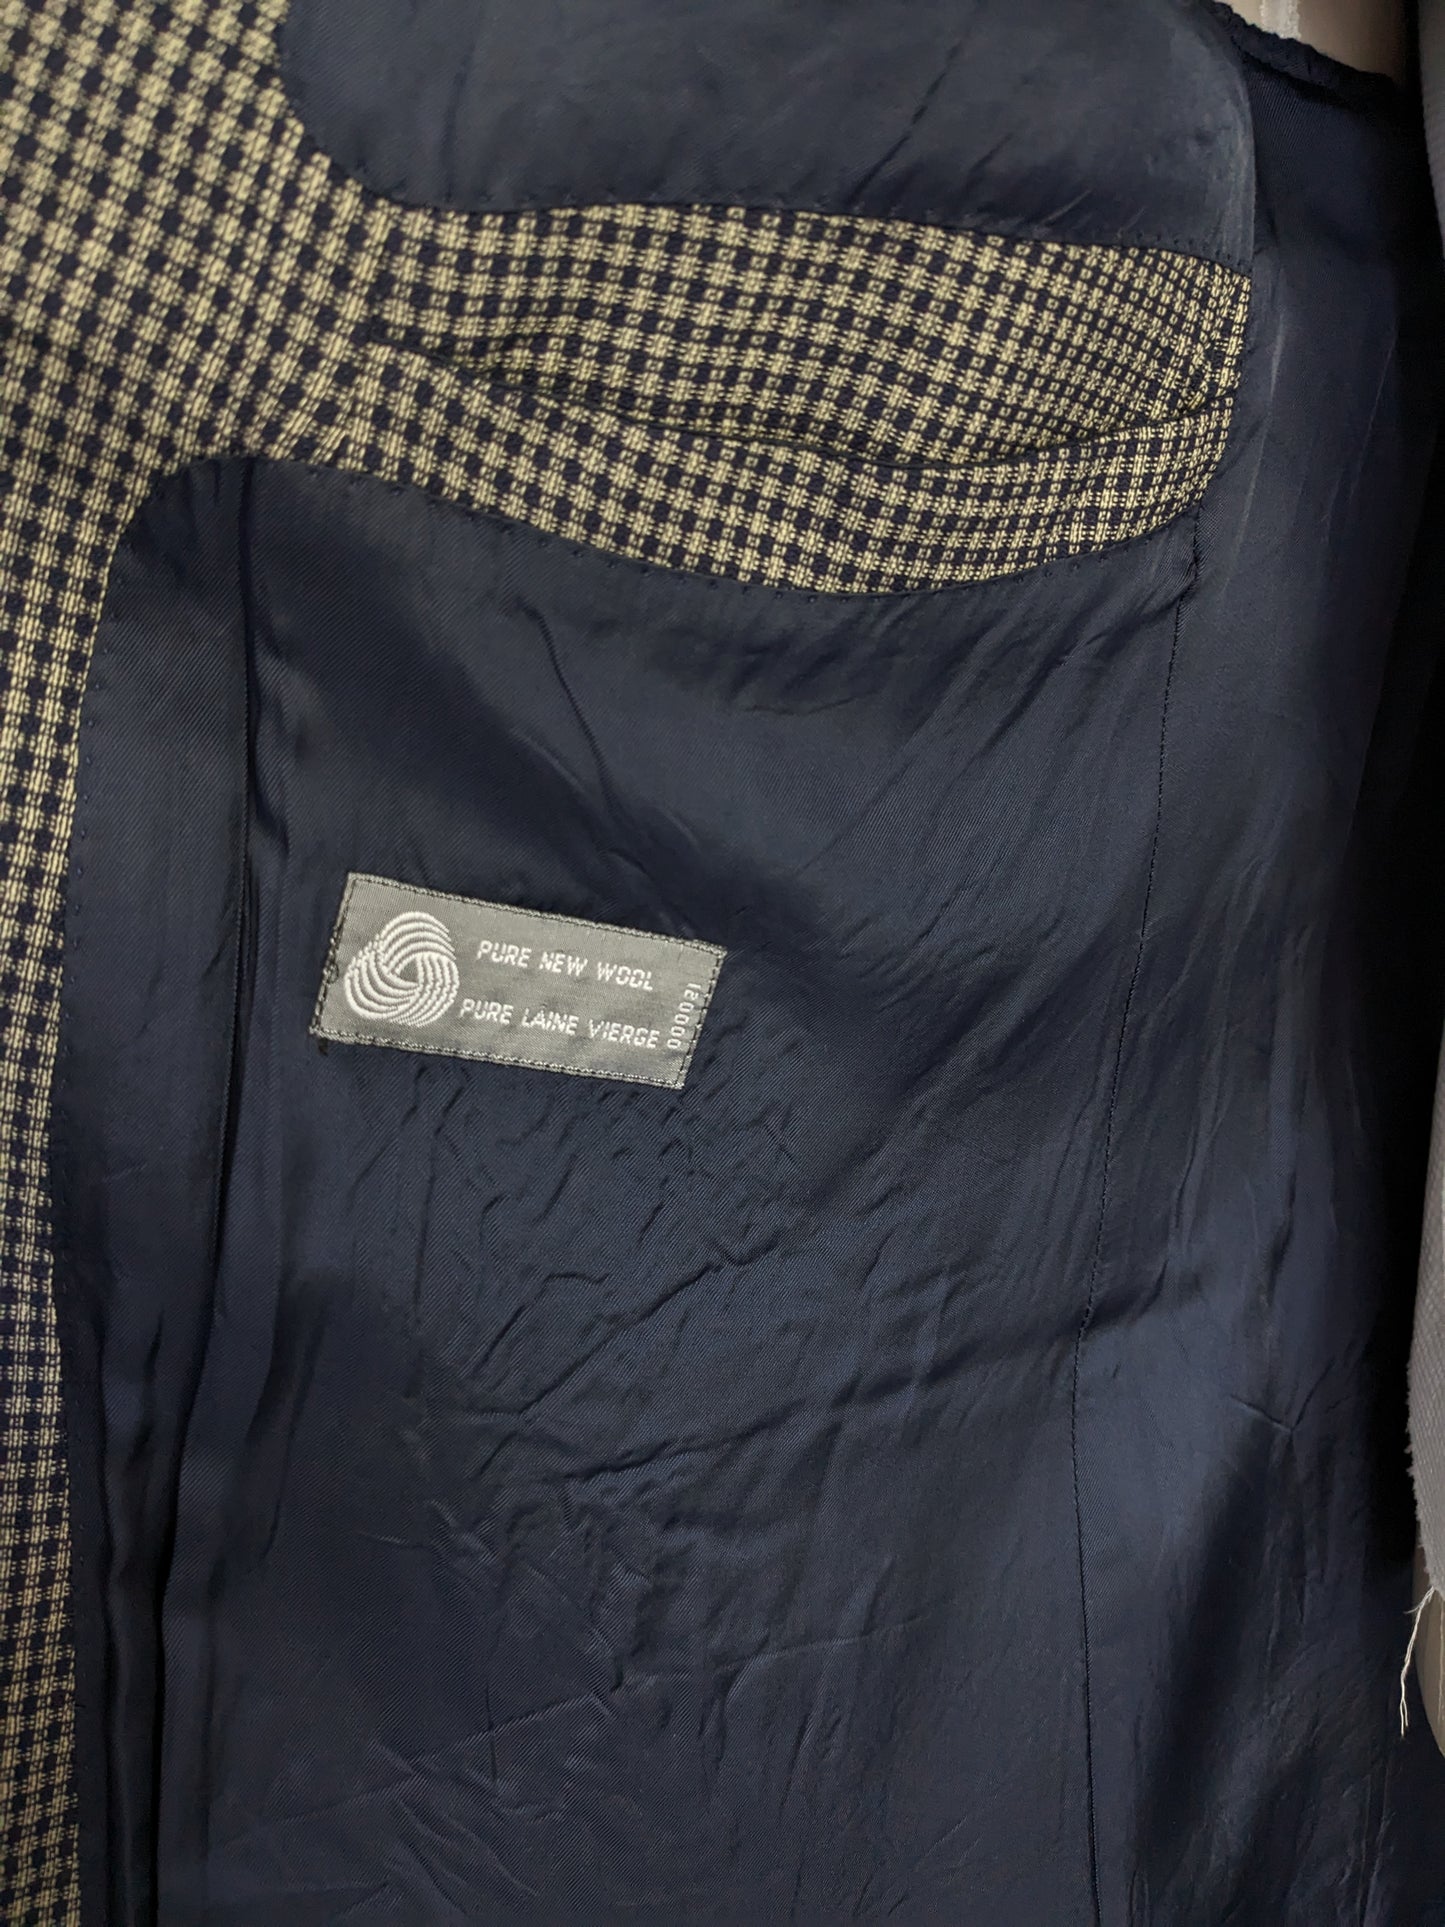 Van Gils chaqueta de lana de doble pecho vintage con inversiones de puntos. Blue gris revisado. Tamaño 54 / L.